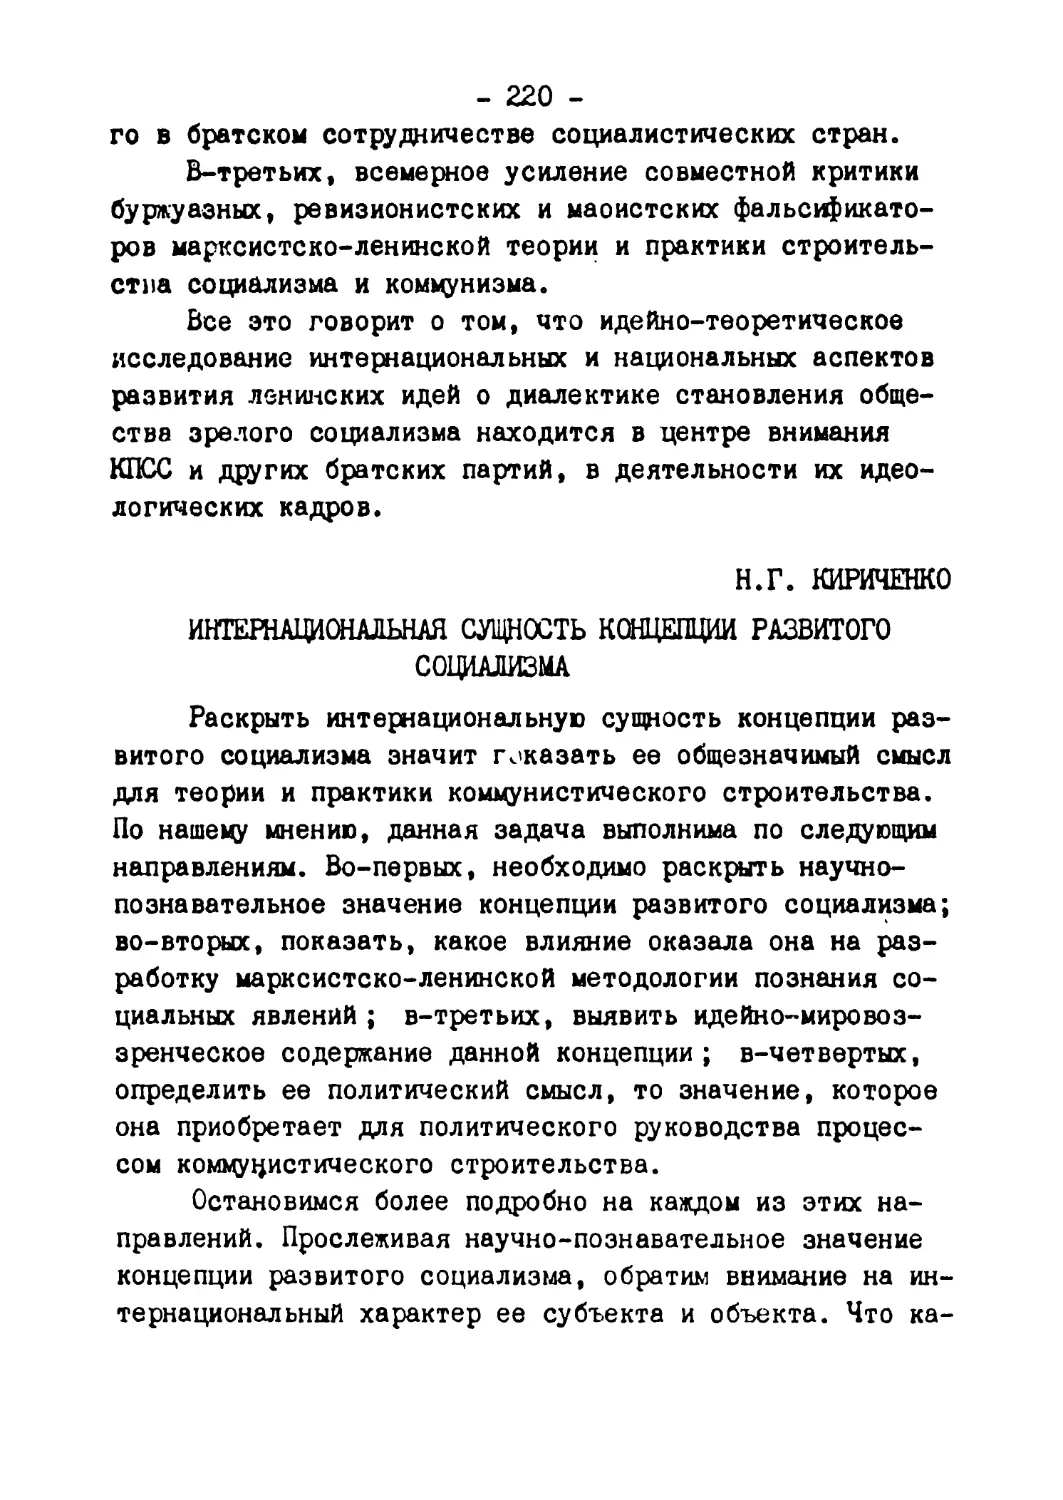 Н.Г. Кириченко - Интернациональная сущность концепции развитого социализма